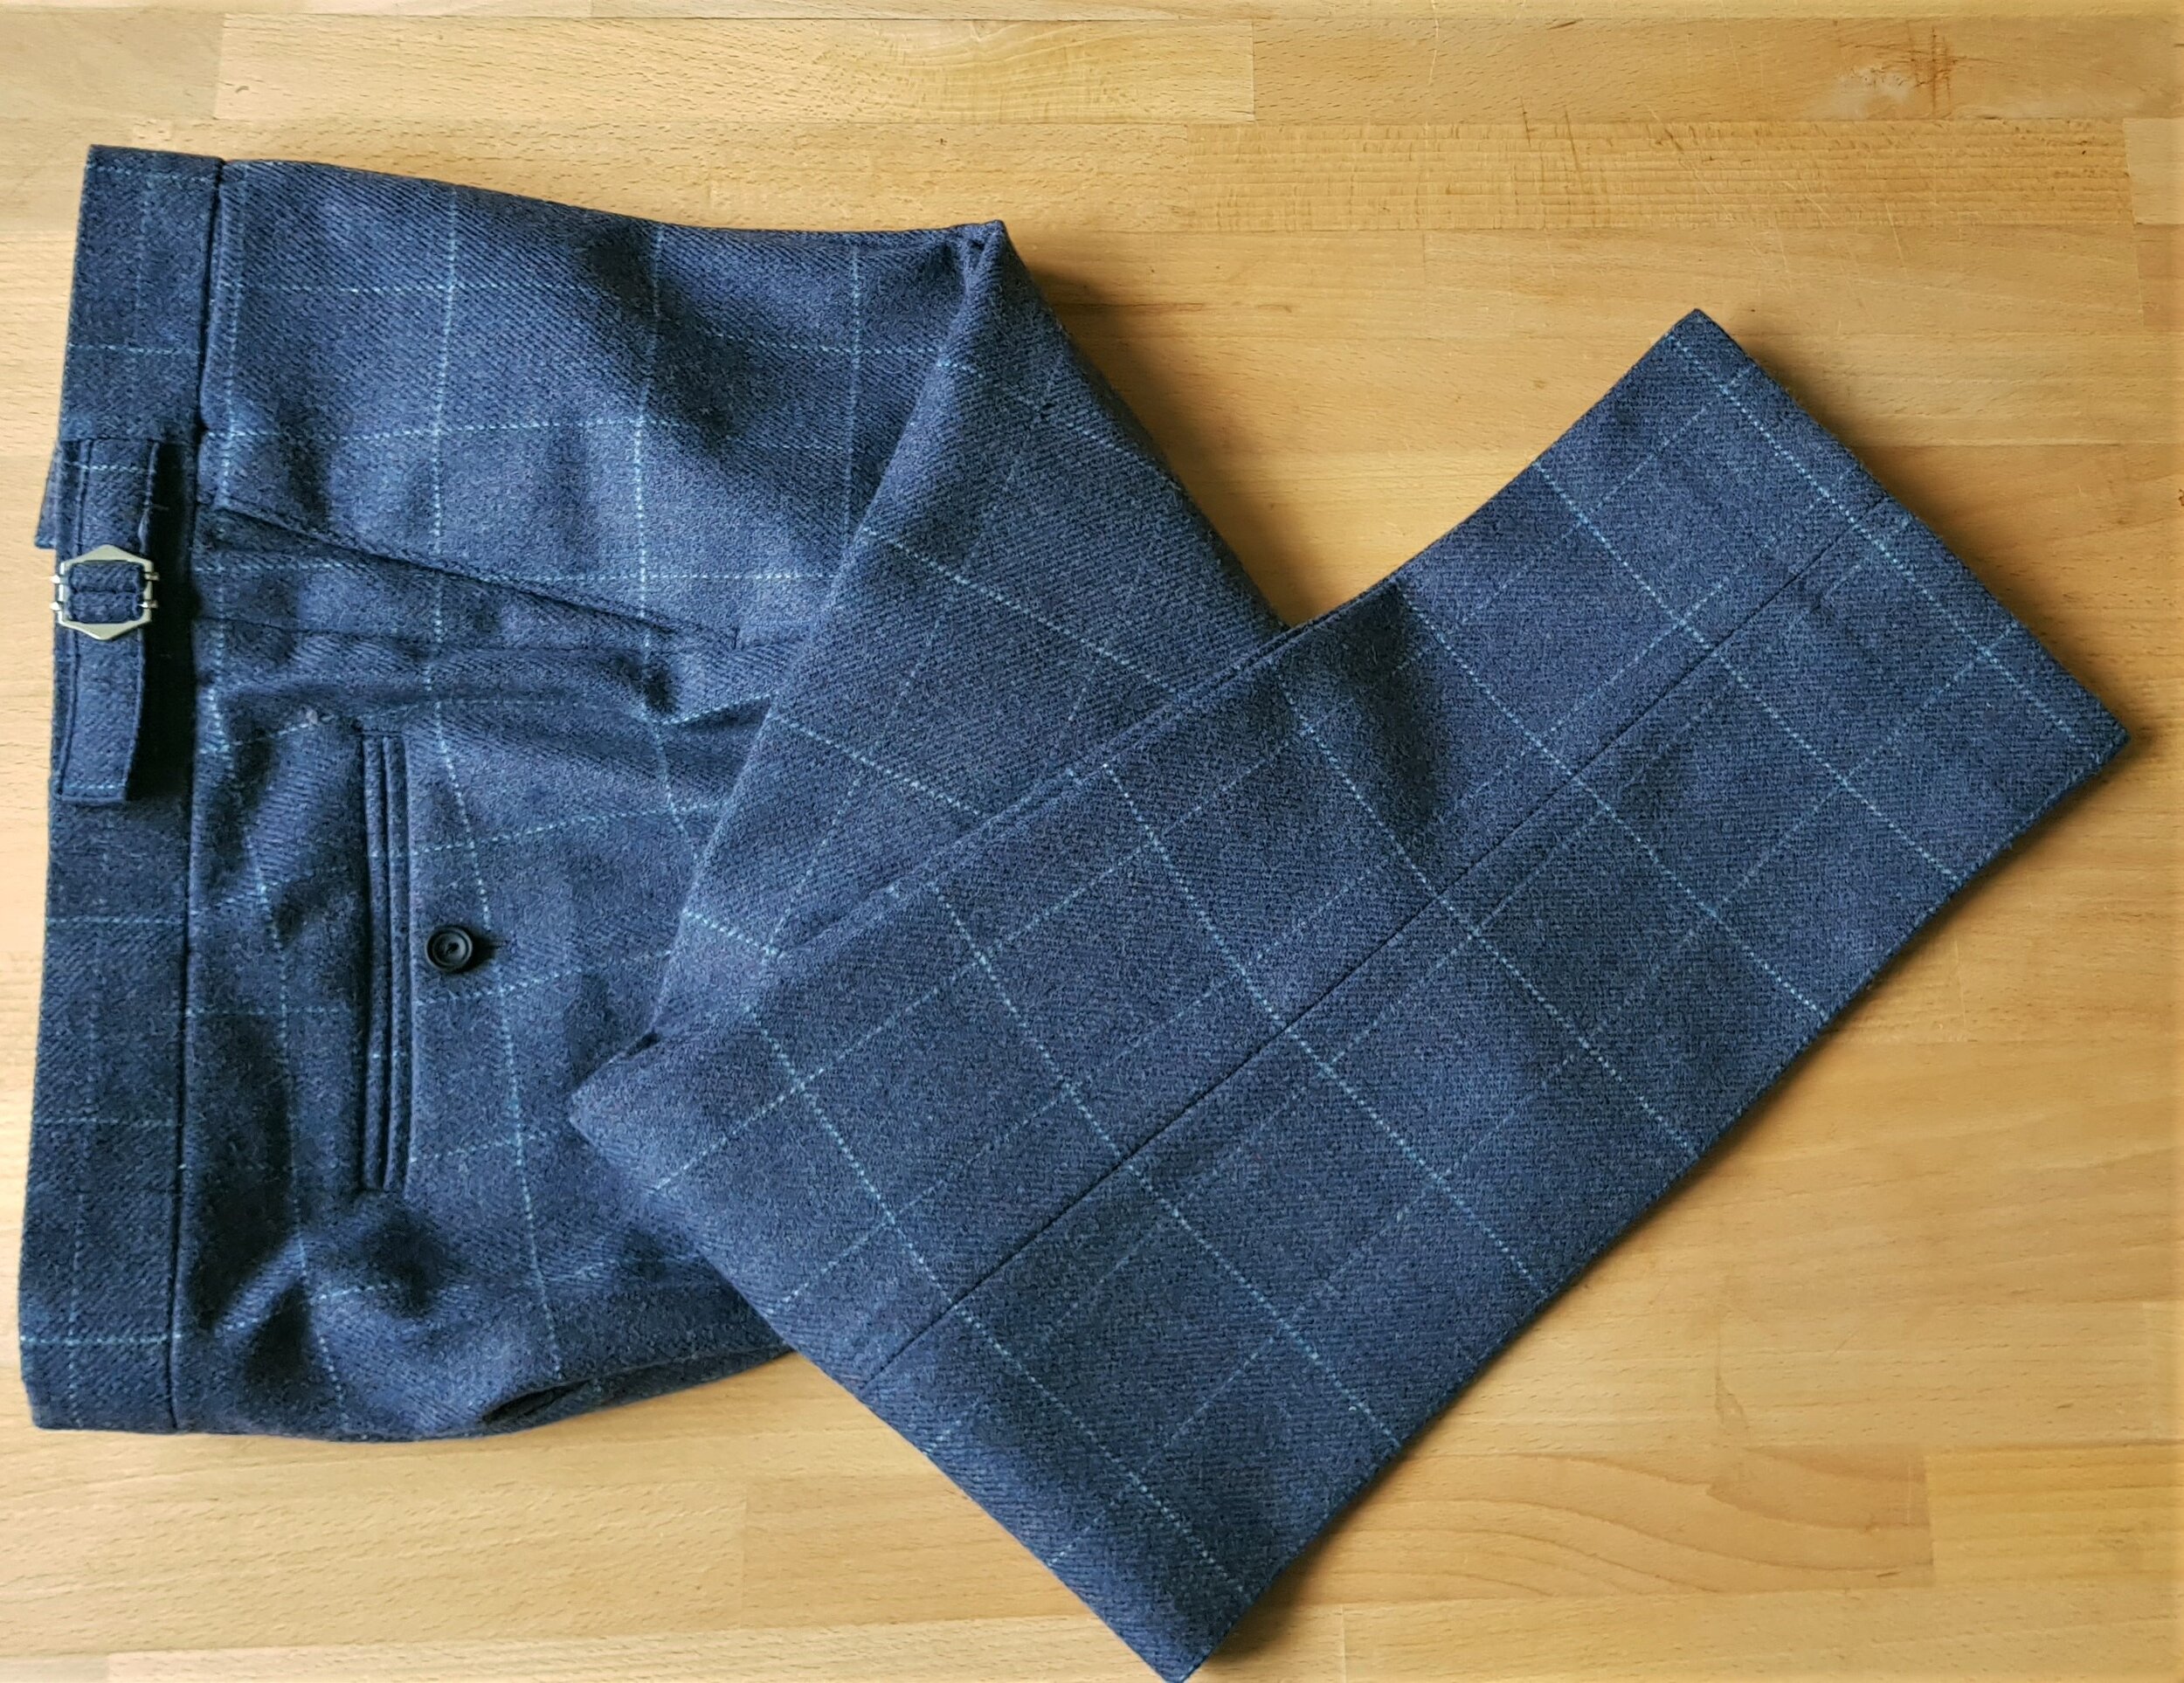 3 Piece suit in Blue Check Tweed (30).jpg